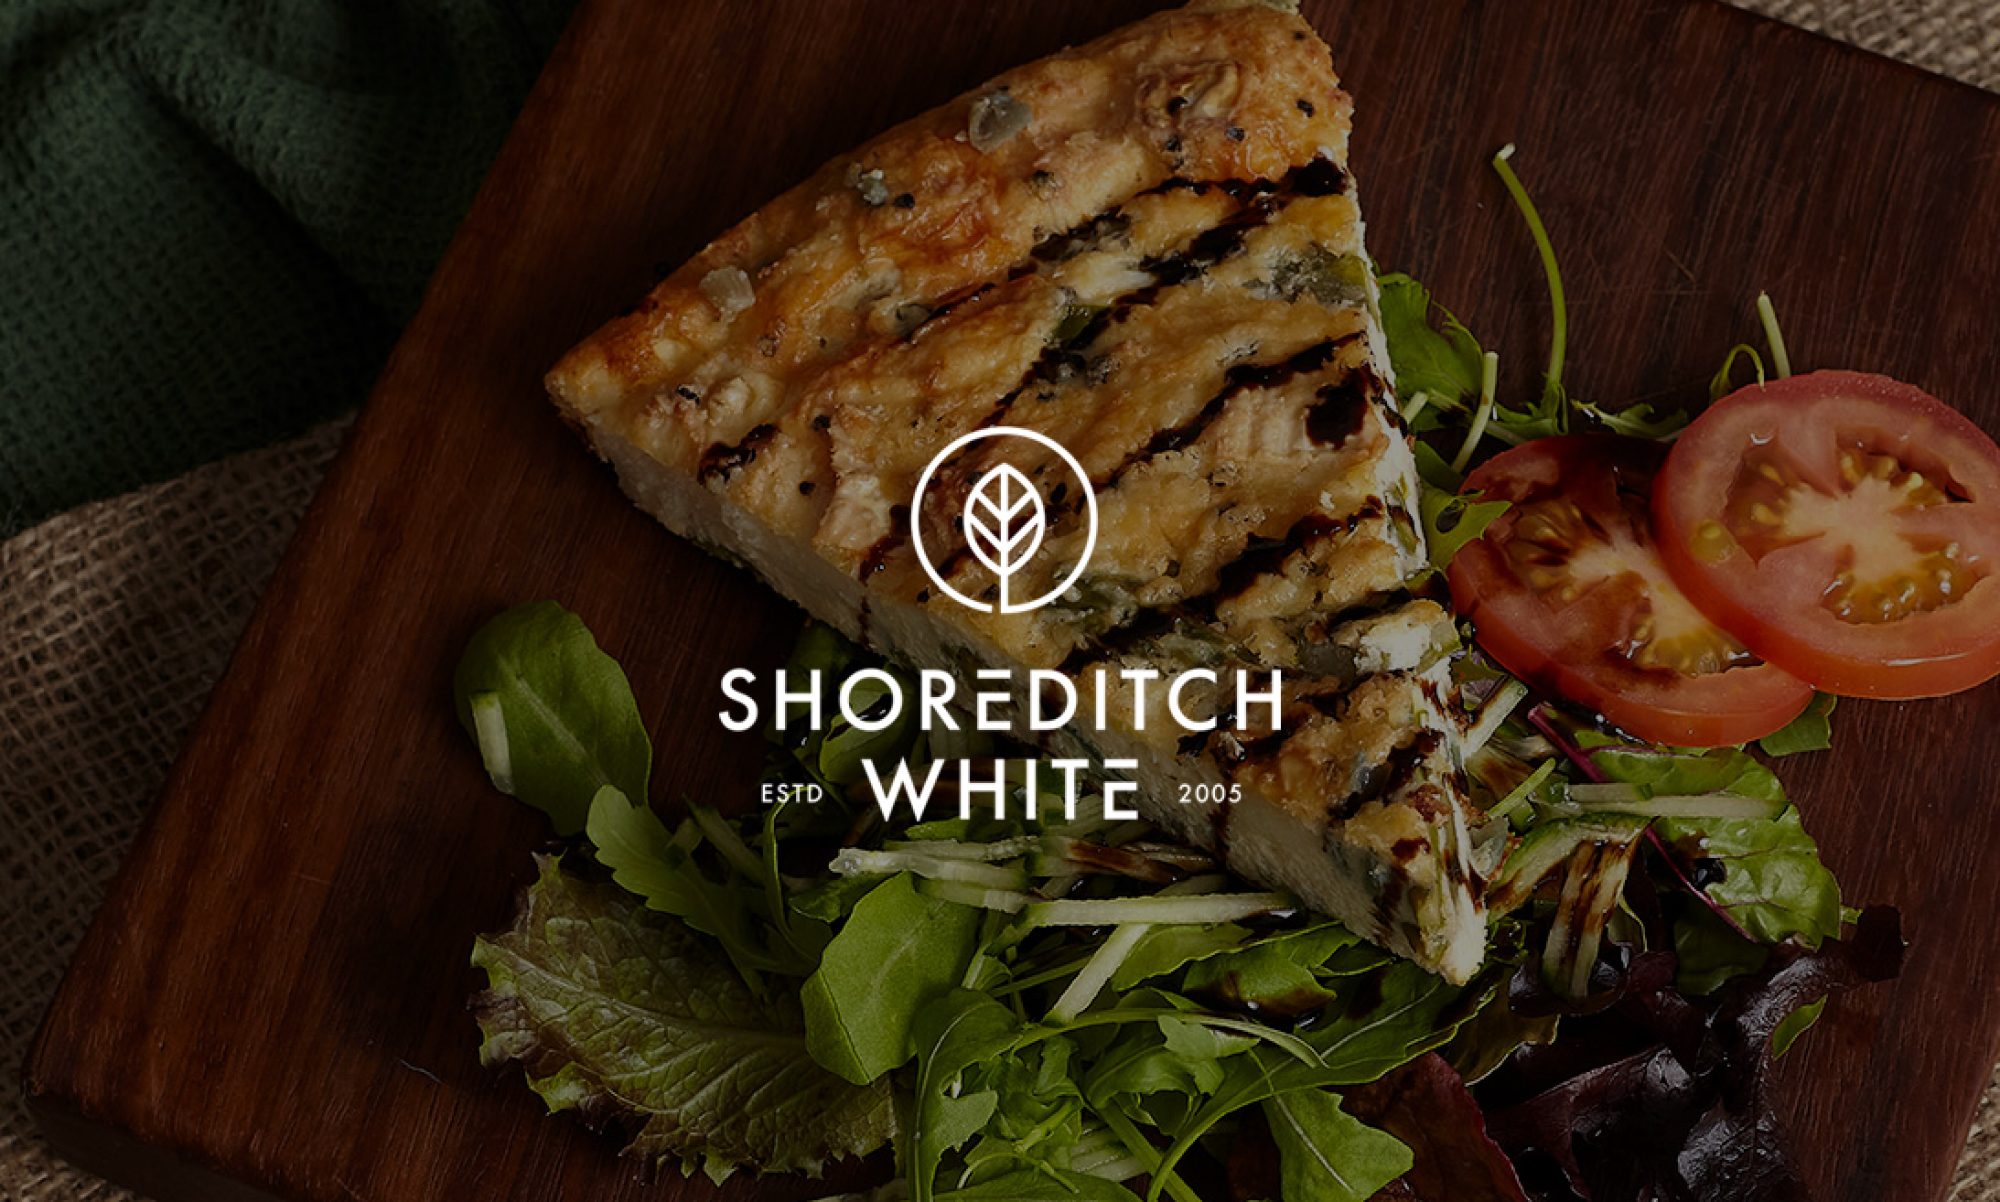 Shoreditch White